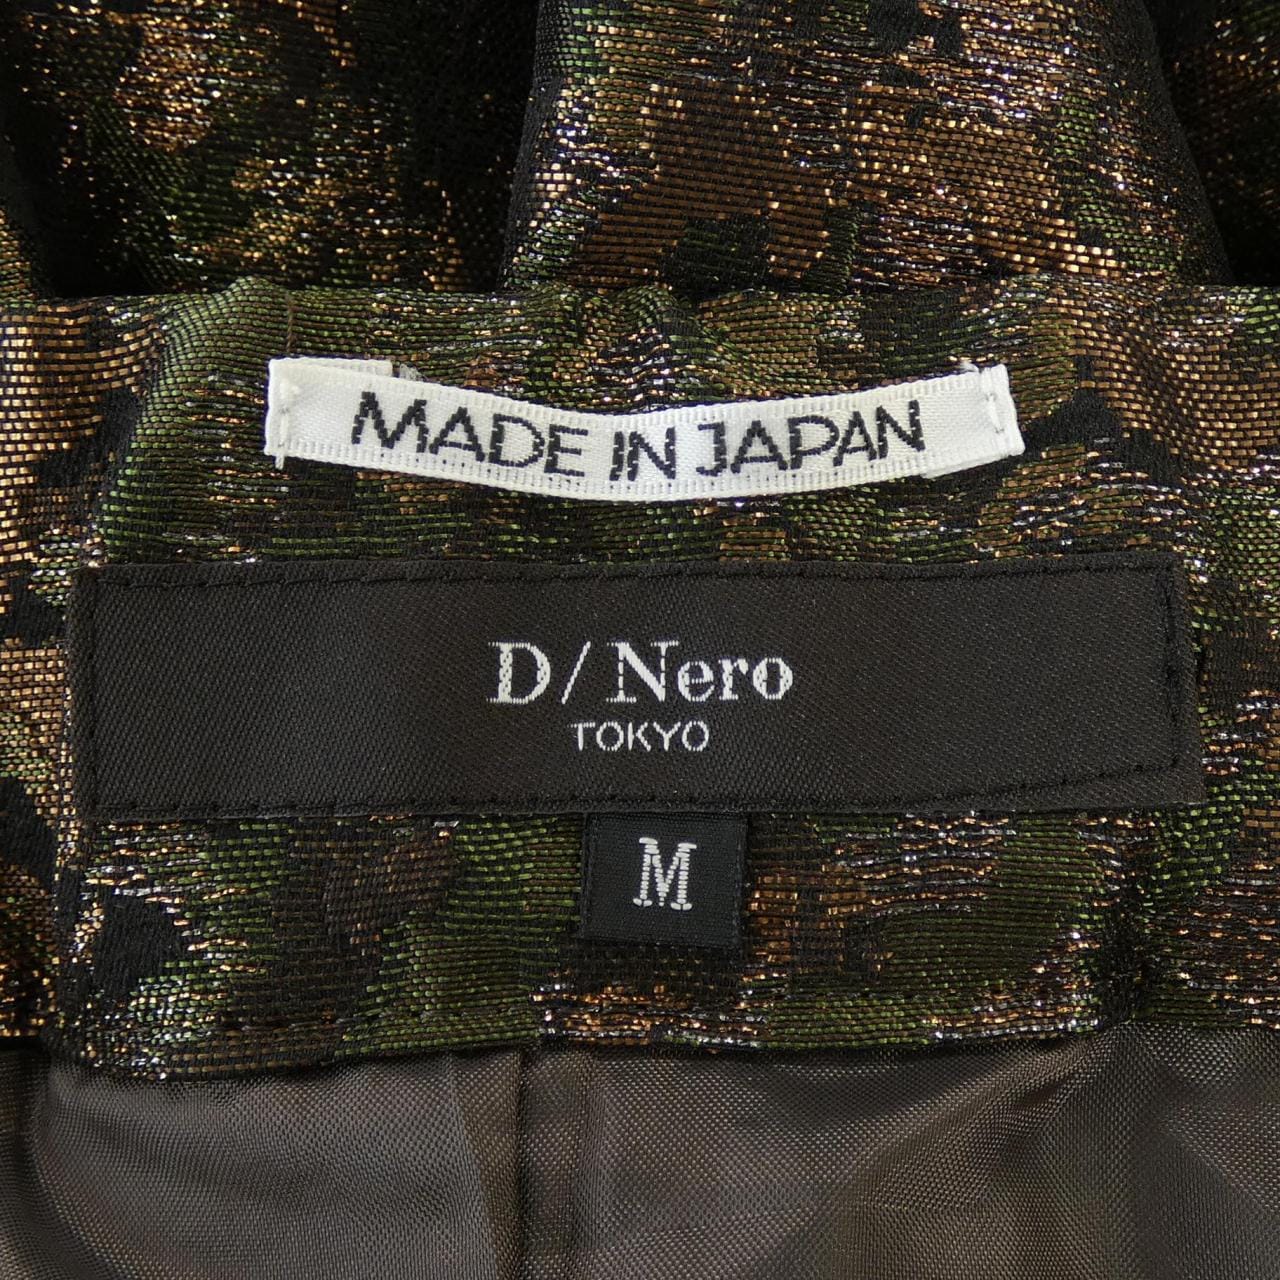 D/Nero skirt